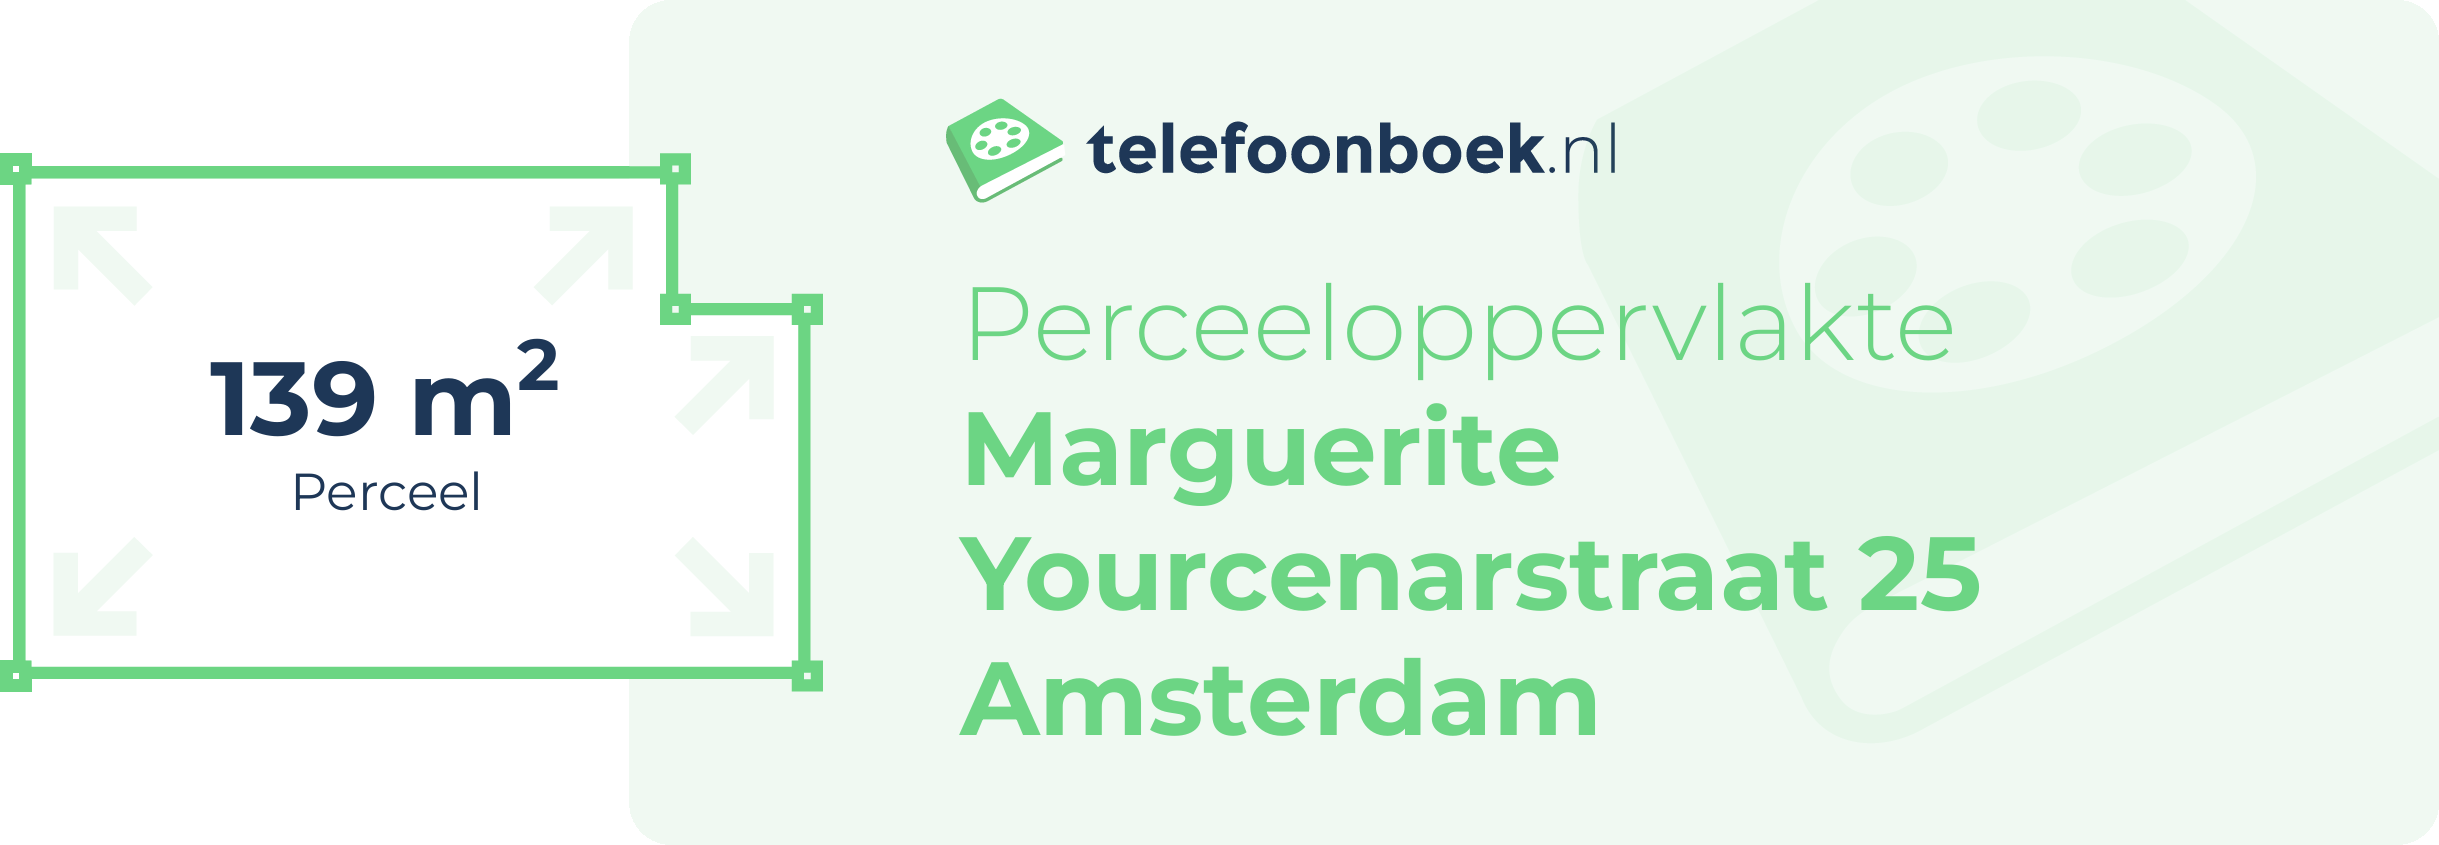 Perceeloppervlakte Marguerite Yourcenarstraat 25 Amsterdam